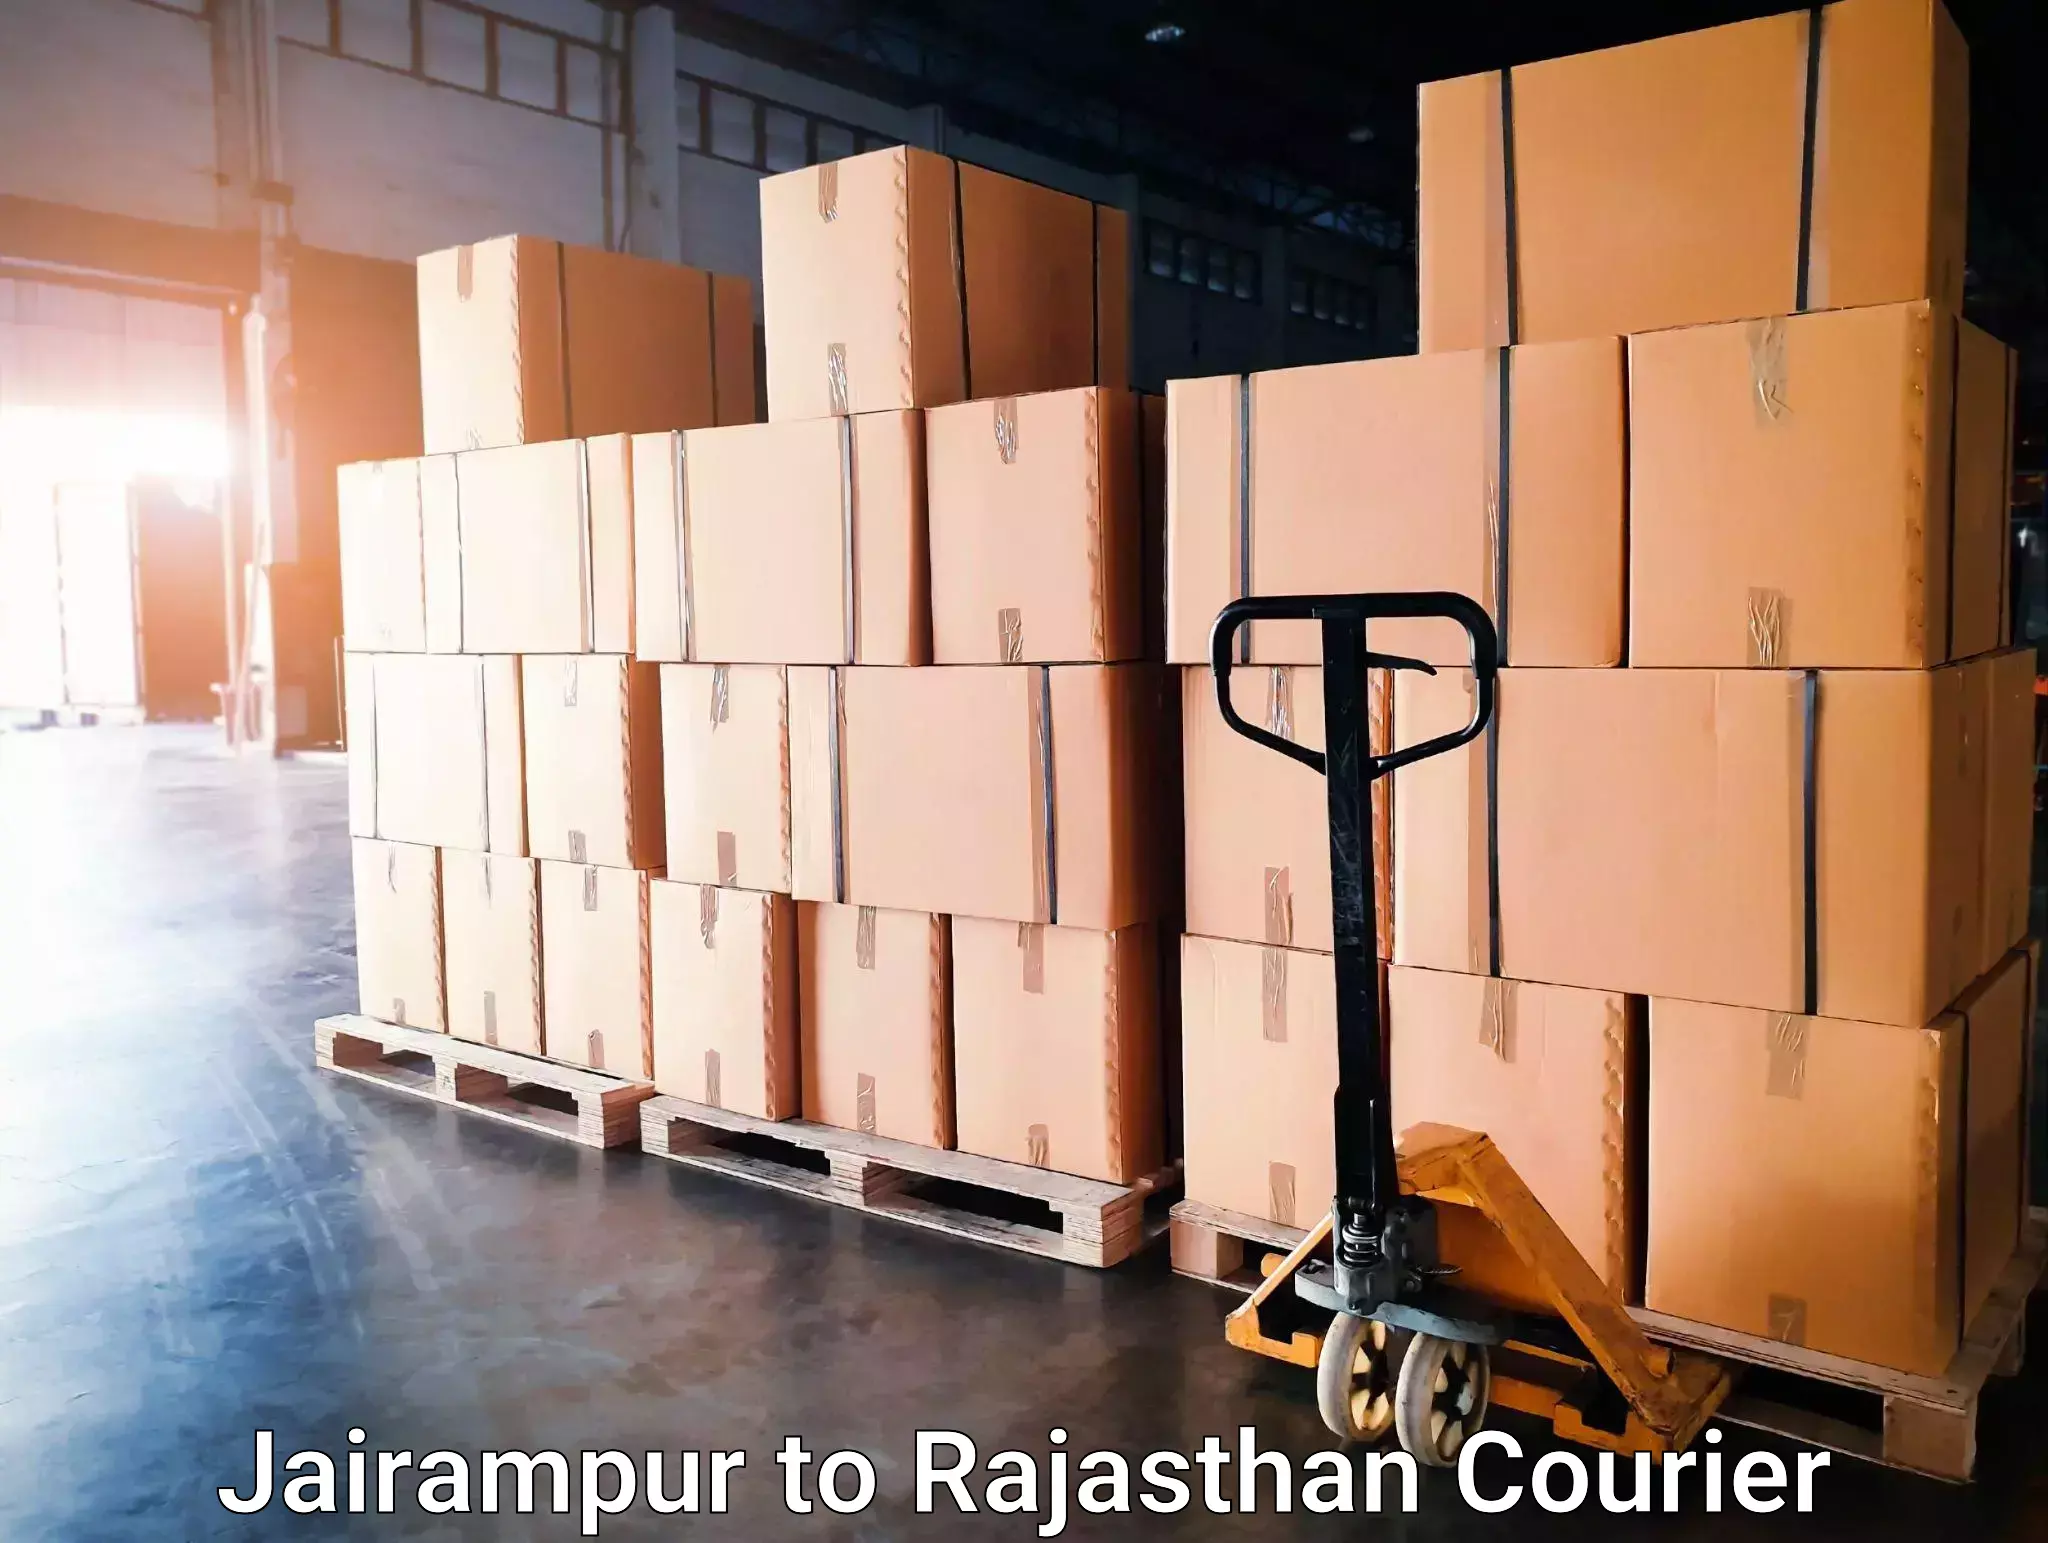 Courier service comparison Jairampur to Jaisalmer